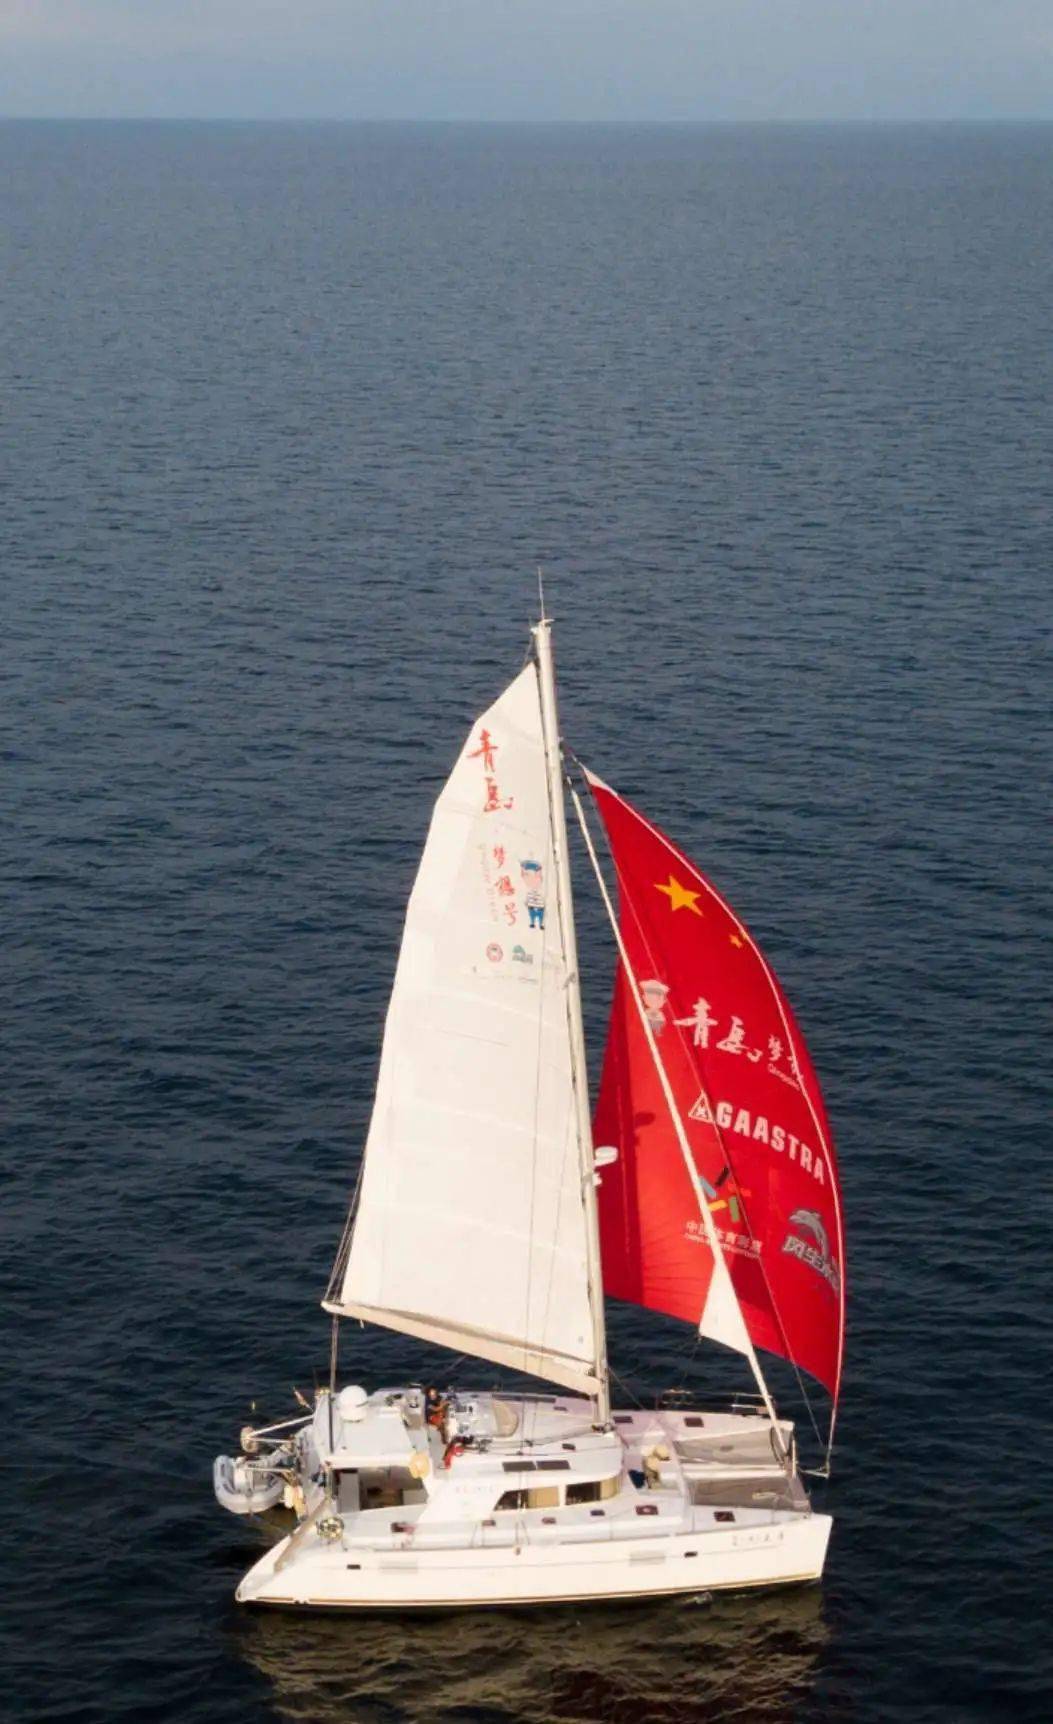 "青岛梦想号"双体帆船圆满完成环球航行,英雄船长徐京坤即将凯旋归来